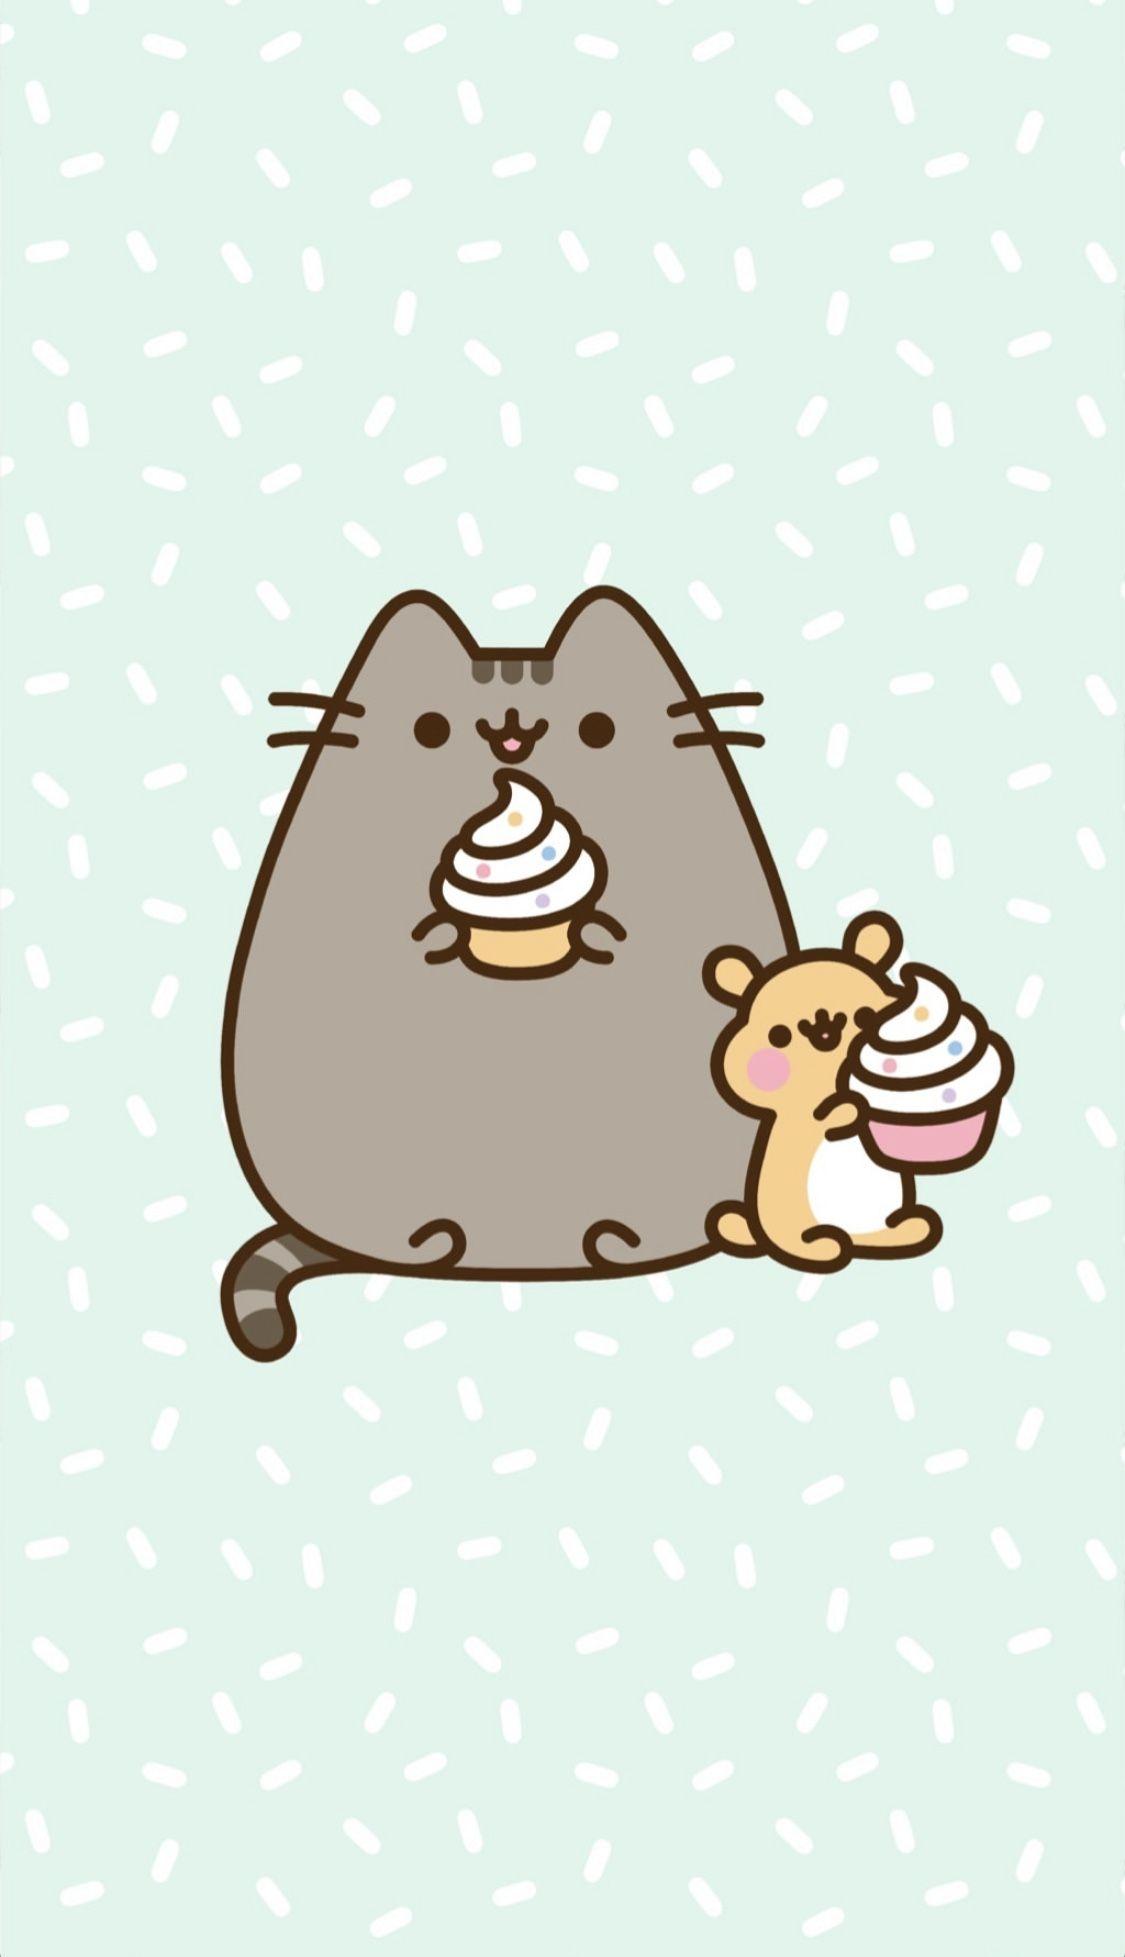 Cute Pusheen Cat Wallpapers - Top Free Cute Pusheen Cat Backgrounds